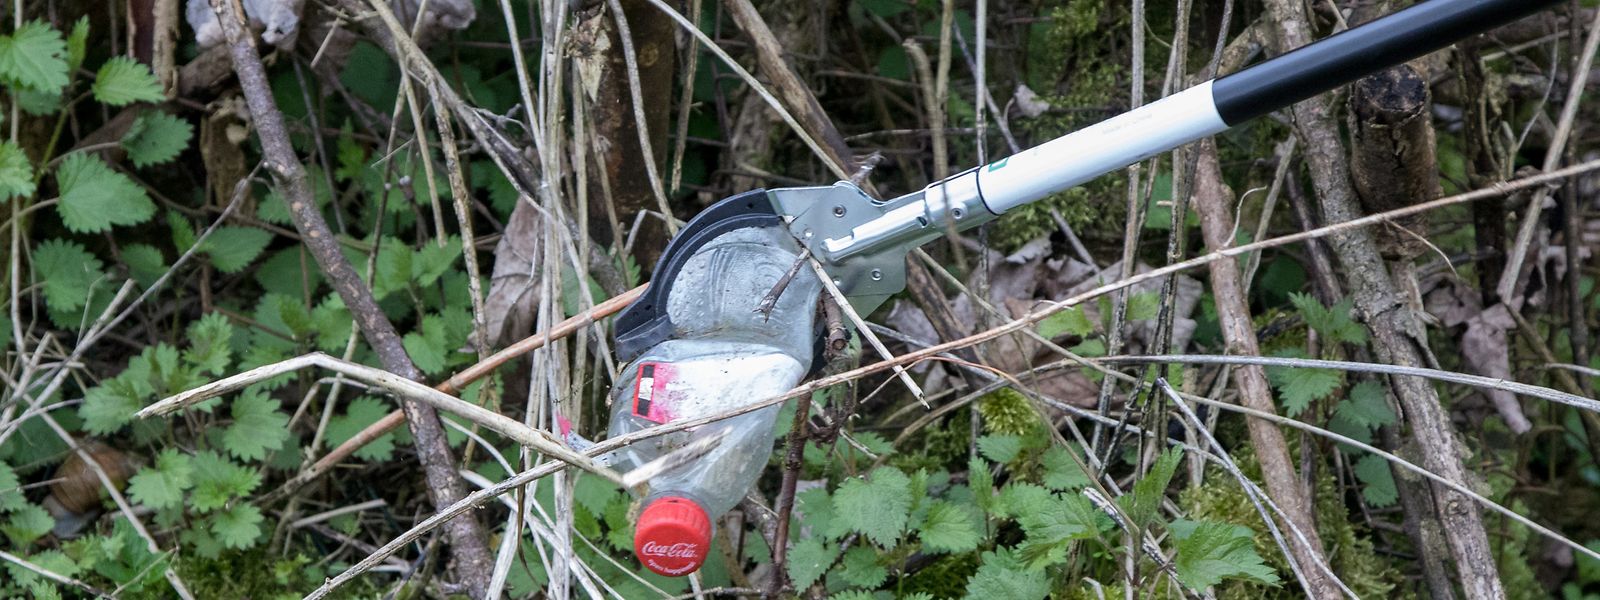 Plastikflaschen landen häufig in der Natur statt im Mülleimer.